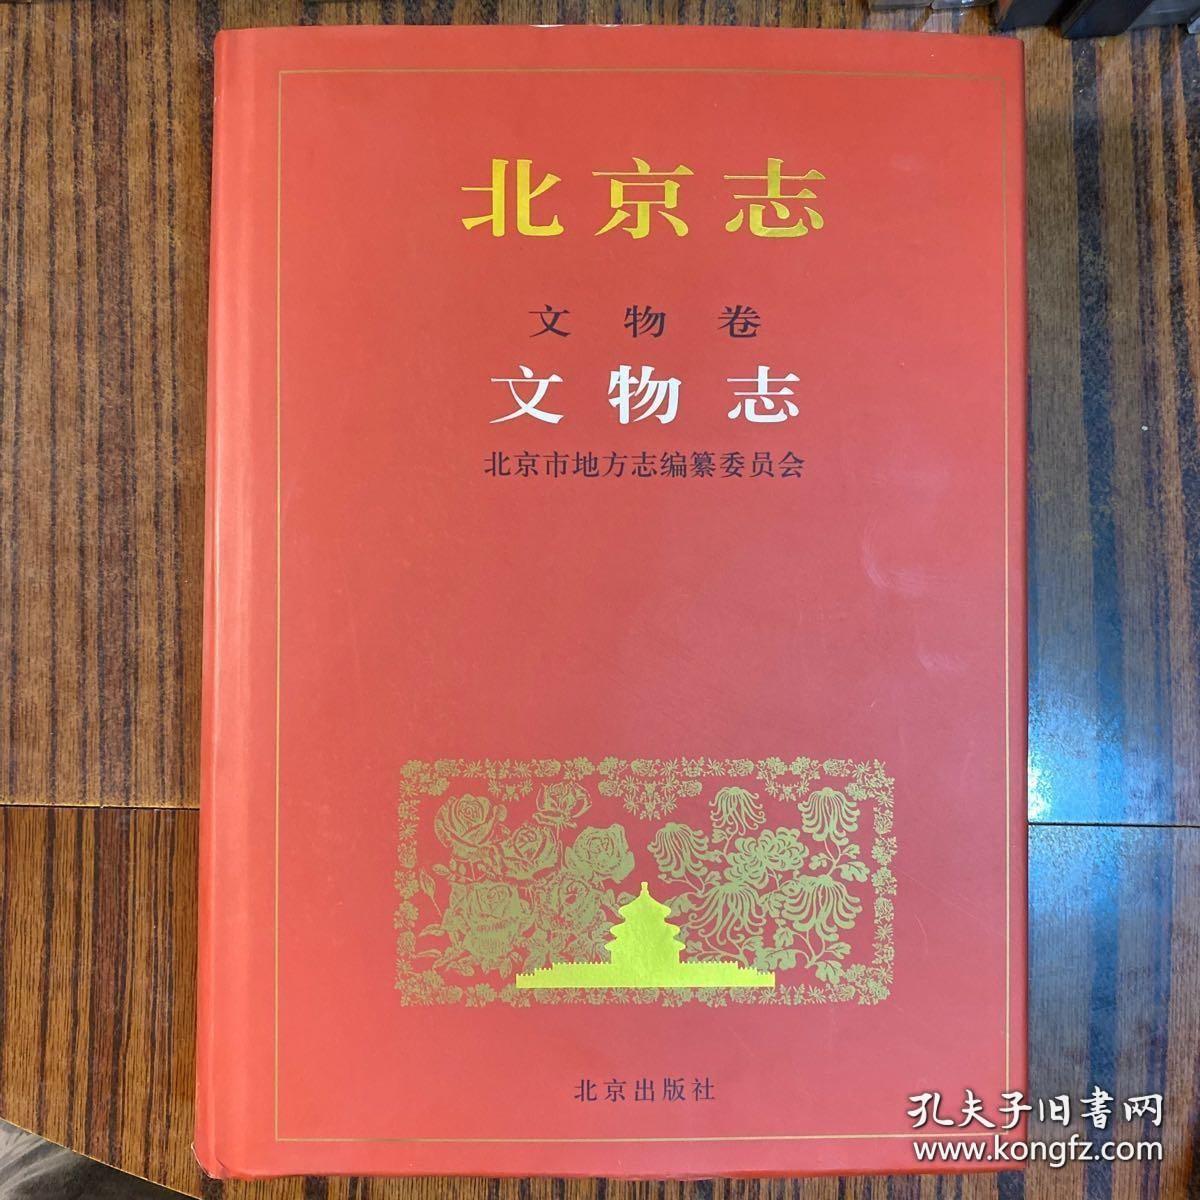 北京志（全119册缺一本未出版的《社会科学志》）